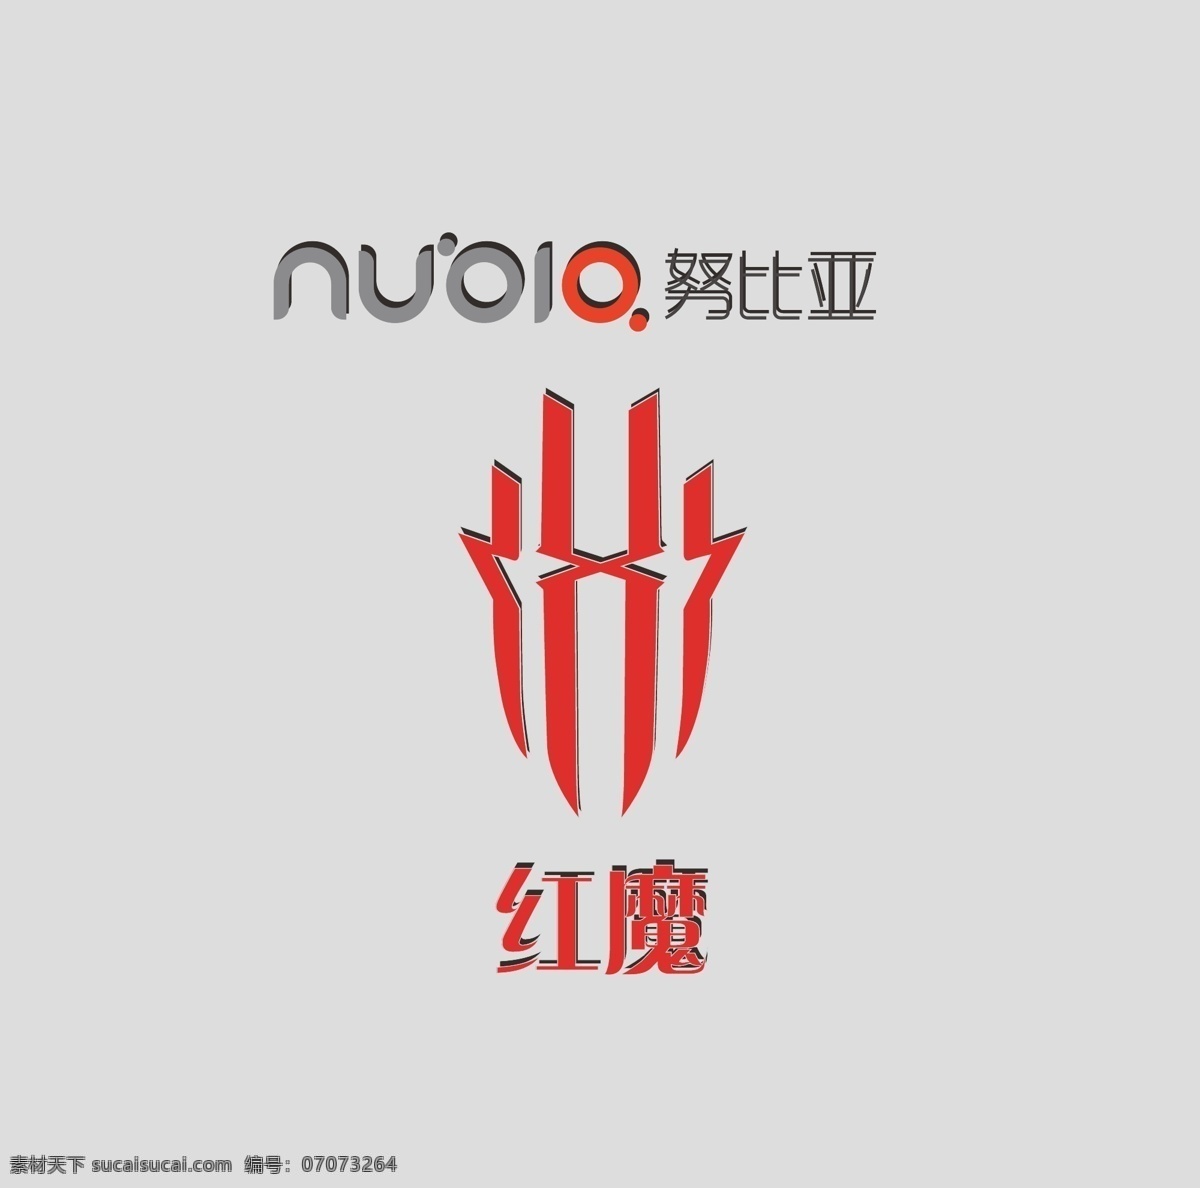 努比亚 logo 红魔 红魔logo 努比亚红魔 努比亚手机 手机 logo设计